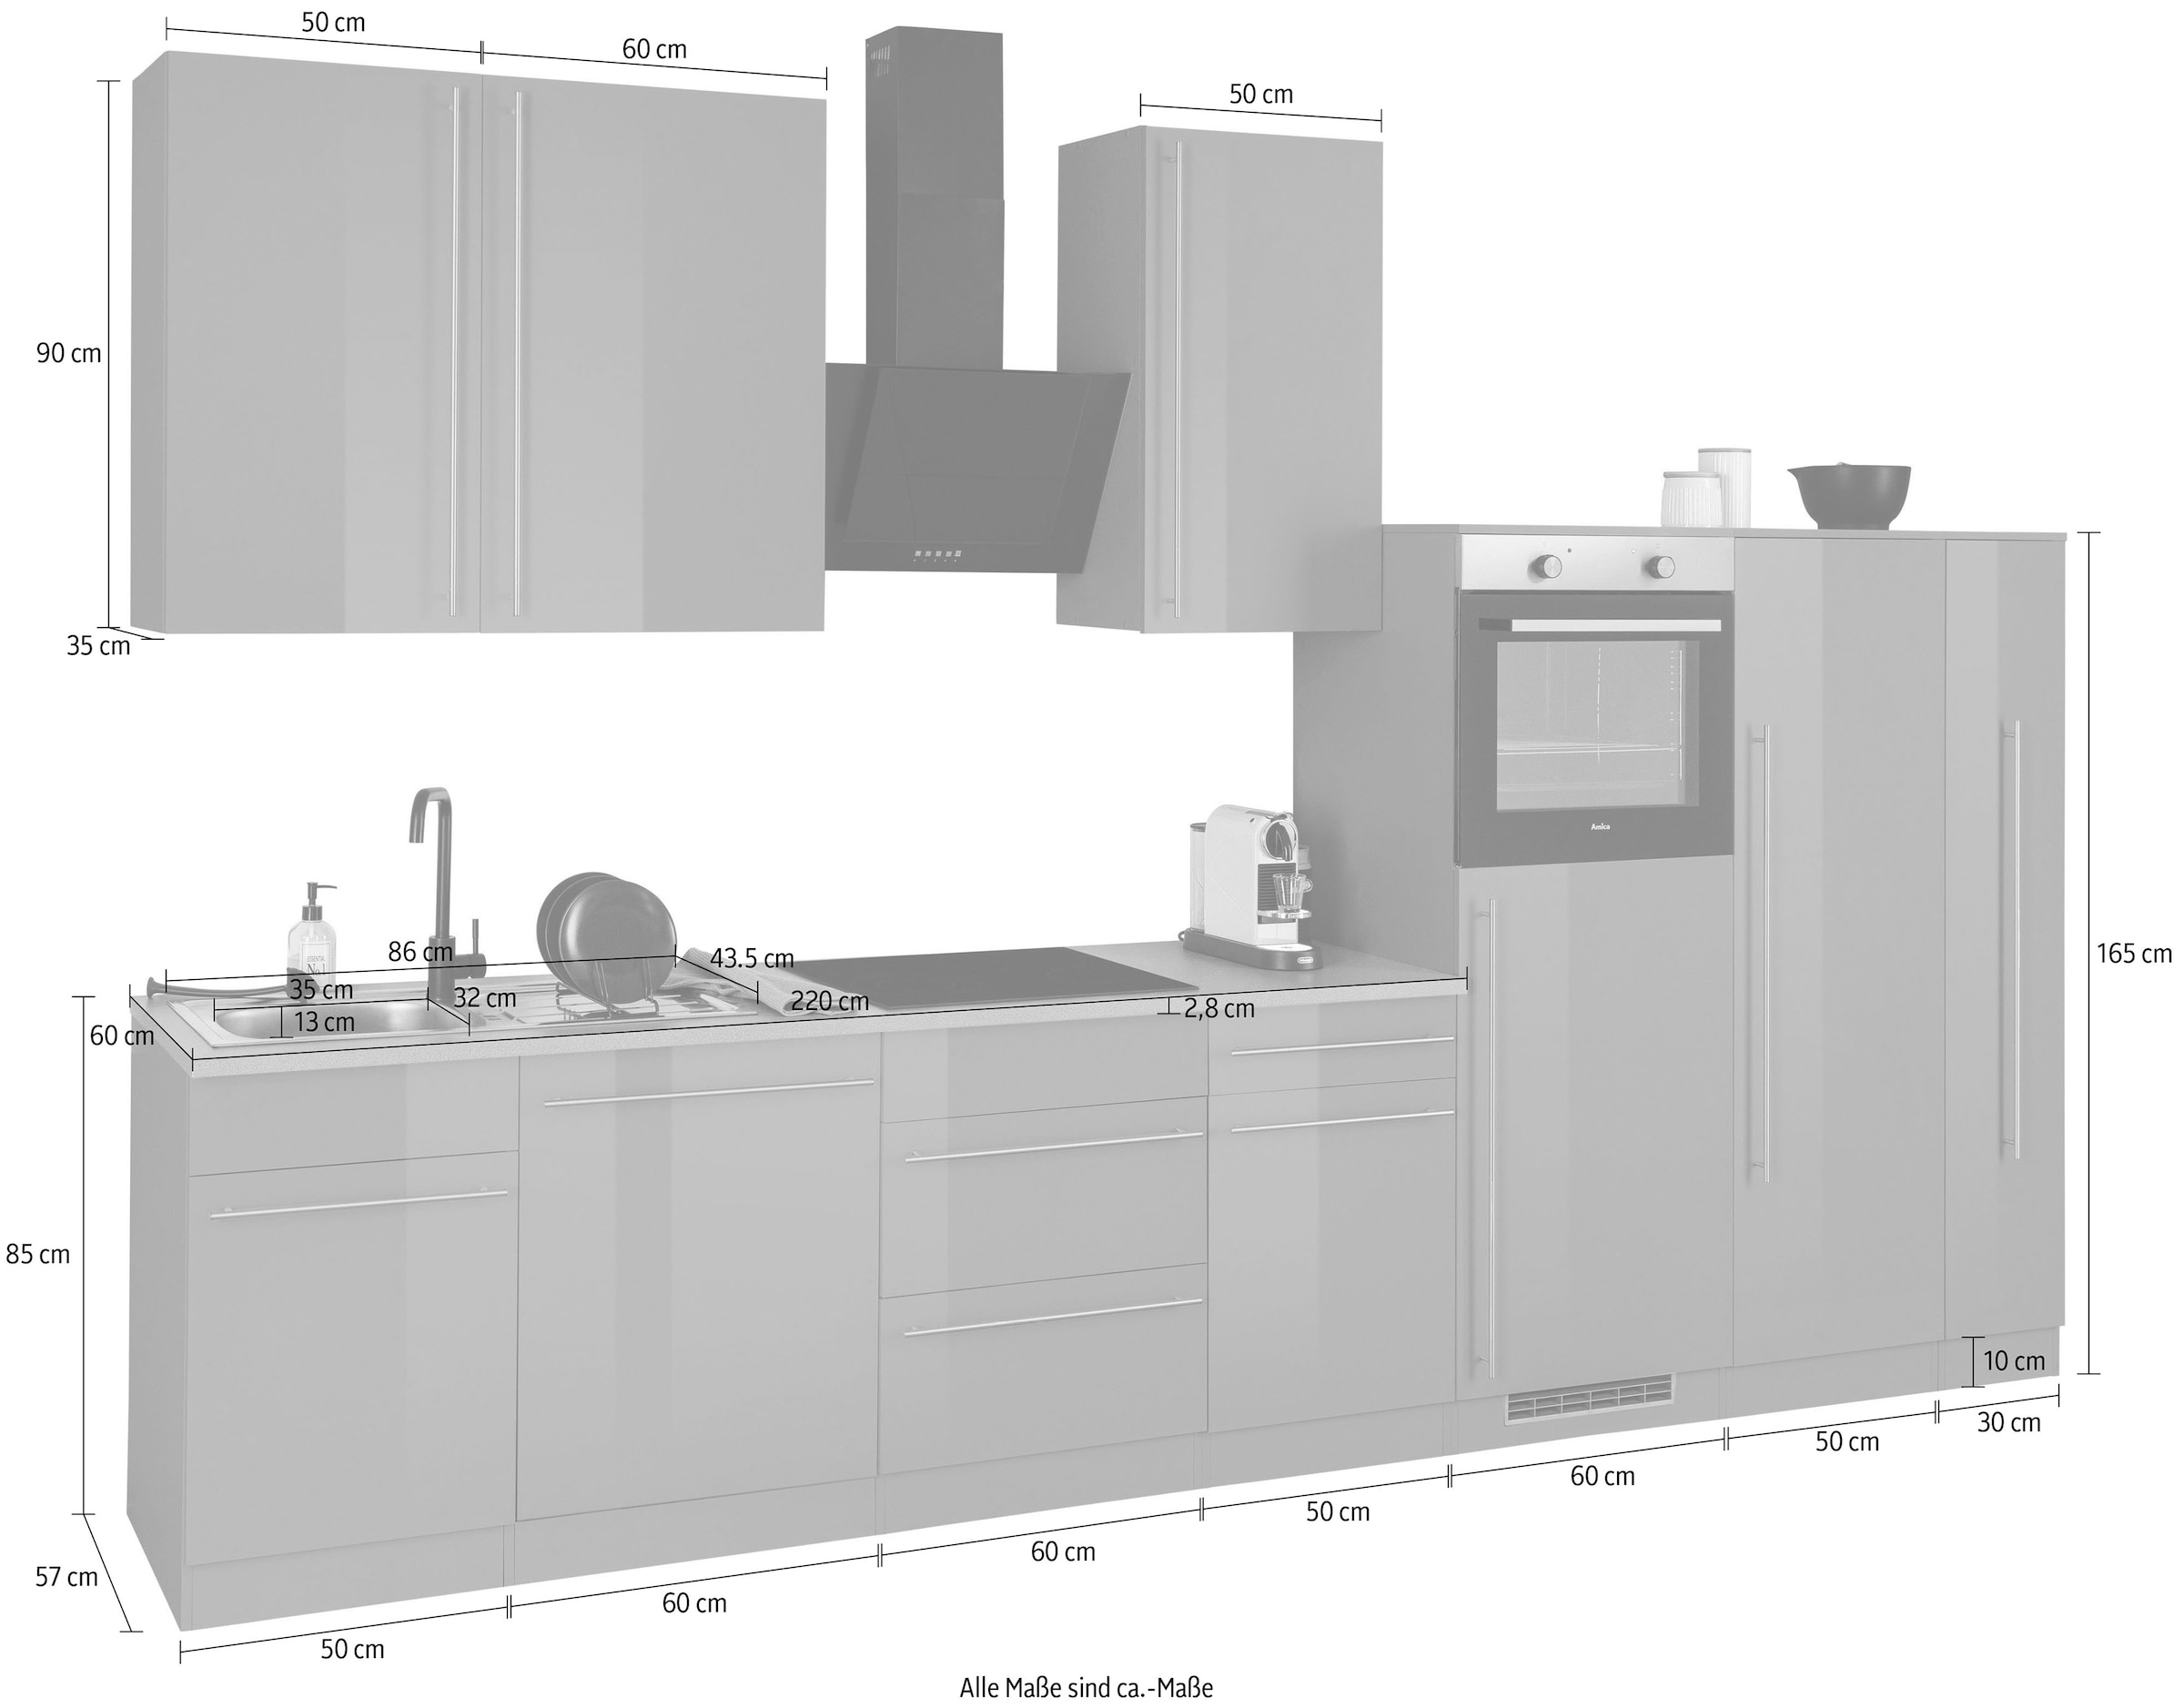 wiho Küchen Küchenzeile »Chicago«, ohne E-Geräte, Breite 360 cm